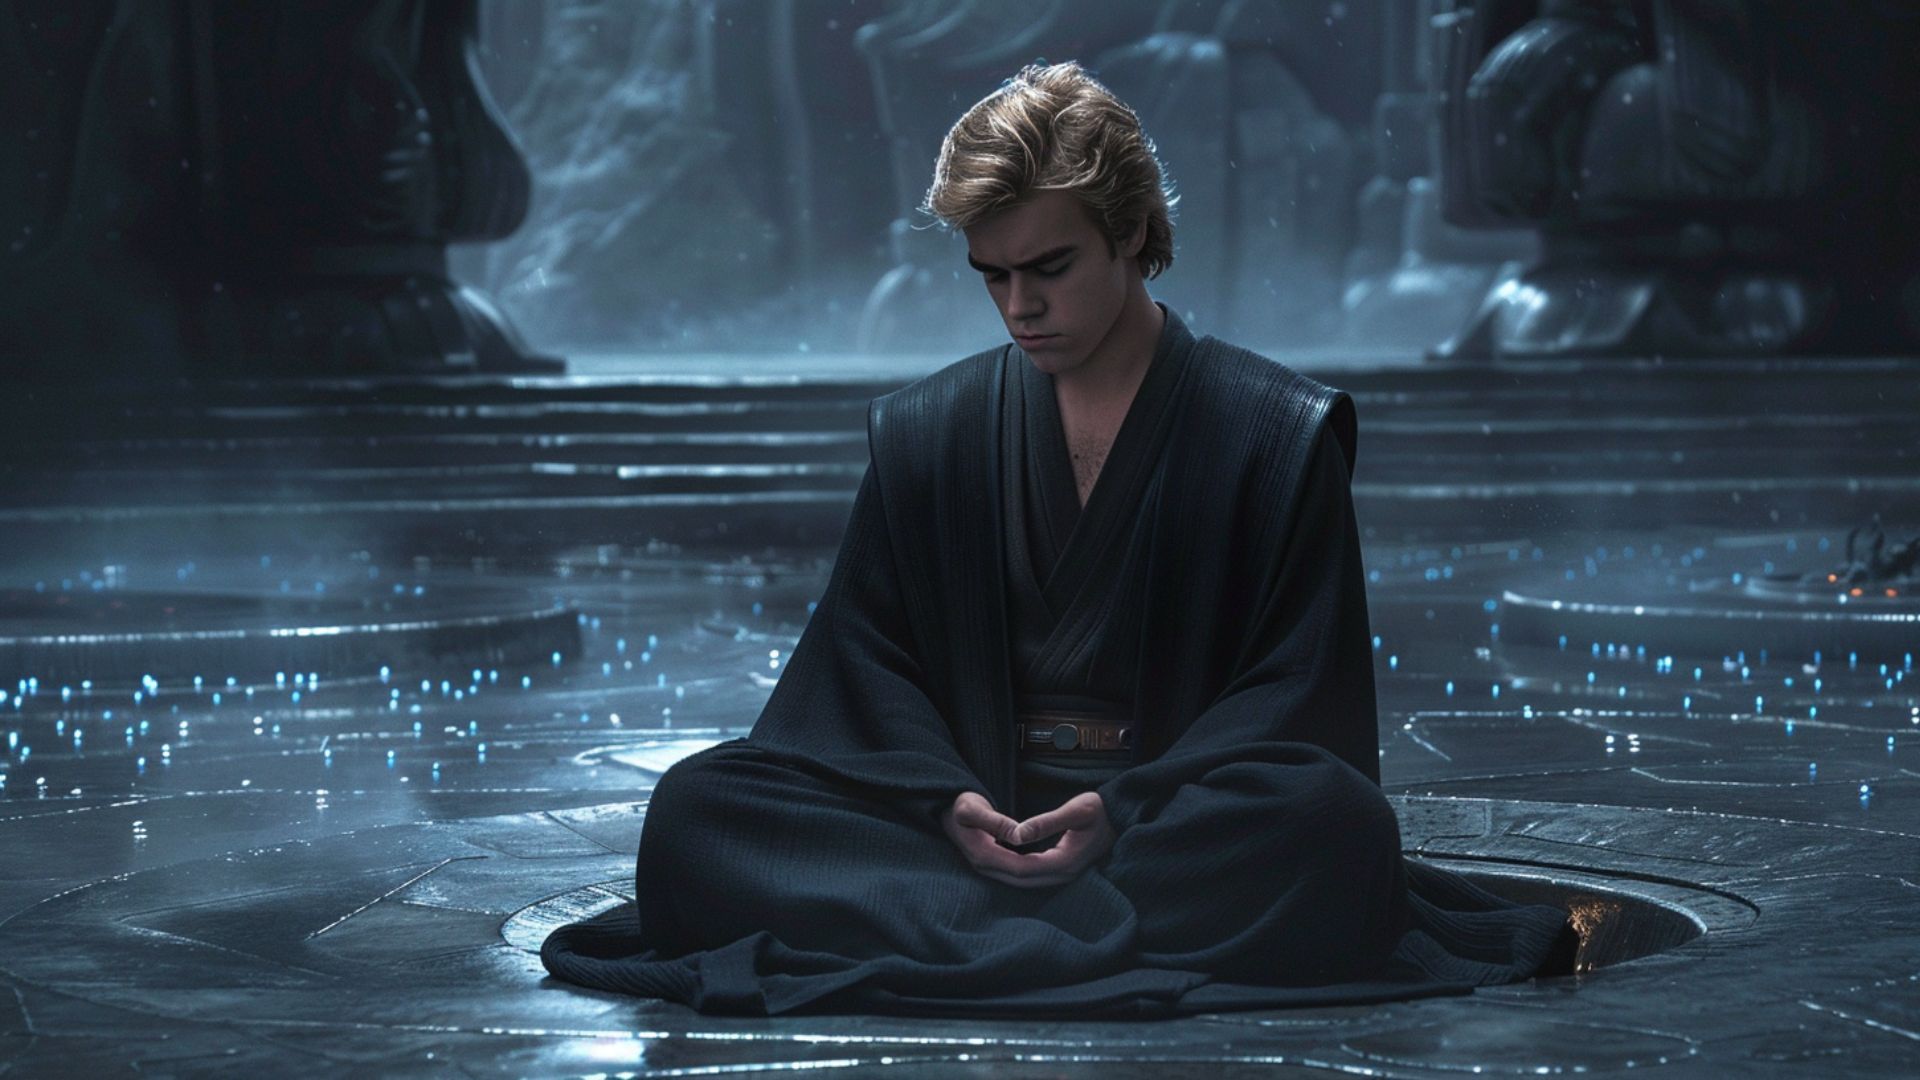 Anakin is meditating